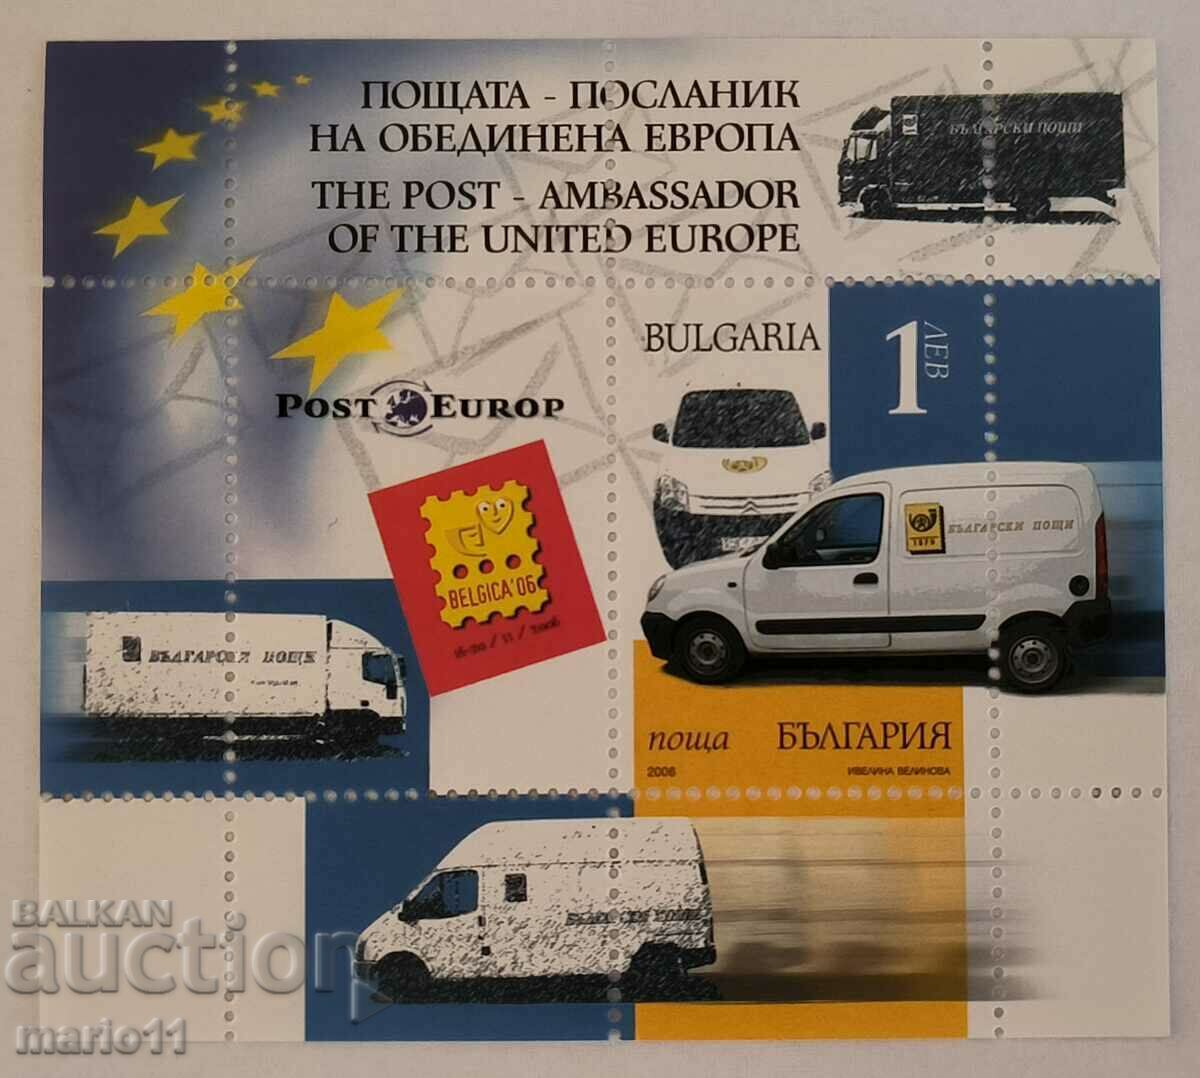 Βουλγαρία - 4756 - Ταχυδρομικός Πρέσβης της Ενωμένης Ευρώπης